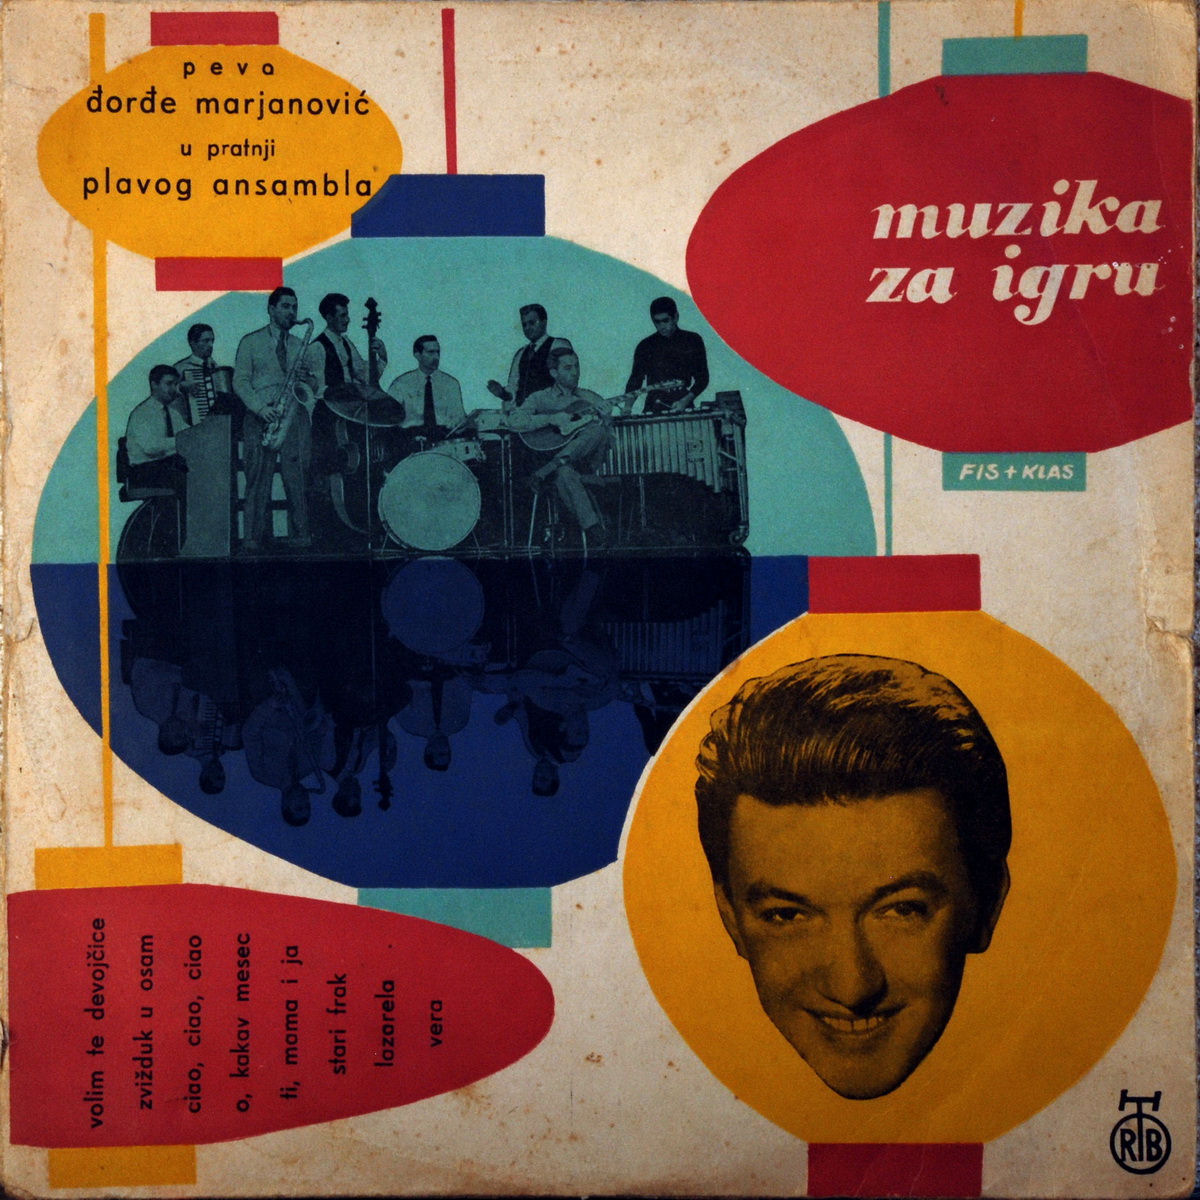 Djordje Marjanovic 1960 Muzika za igru a